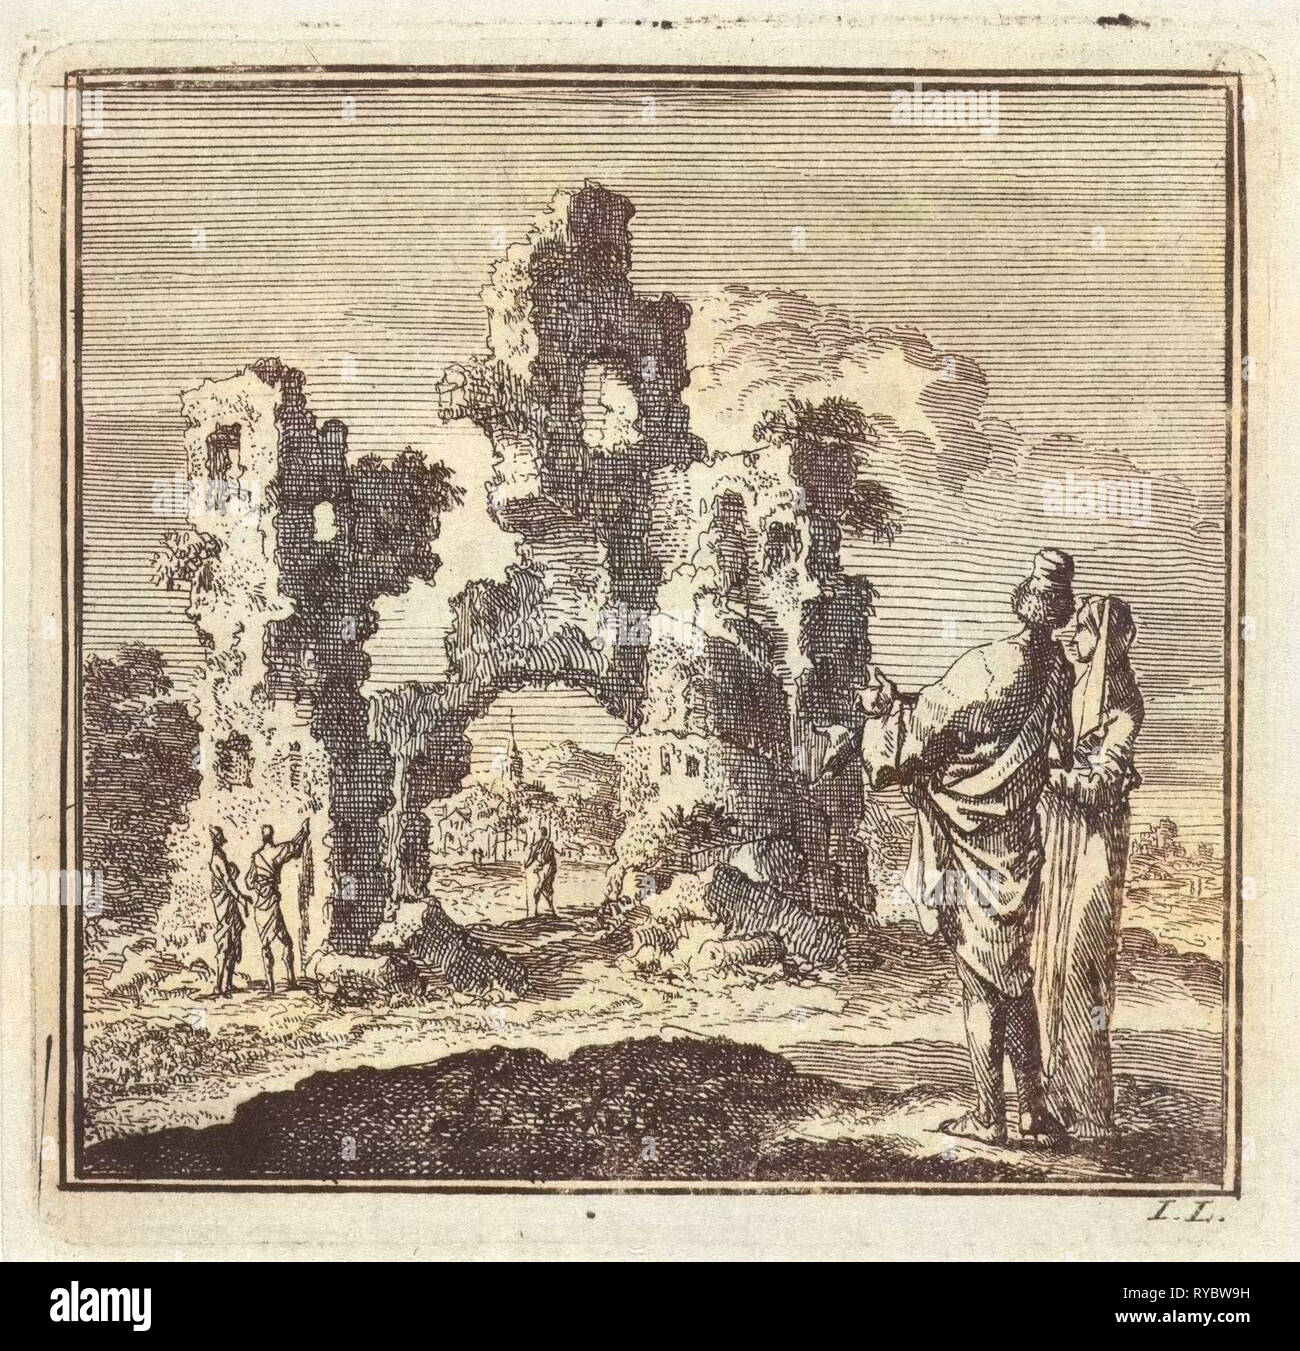 Deux figures regardez les ruines d'un château, Jan Luyken, mer. Arentsz & Pieter Cornelis van der Sys (II), 1711 Banque D'Images